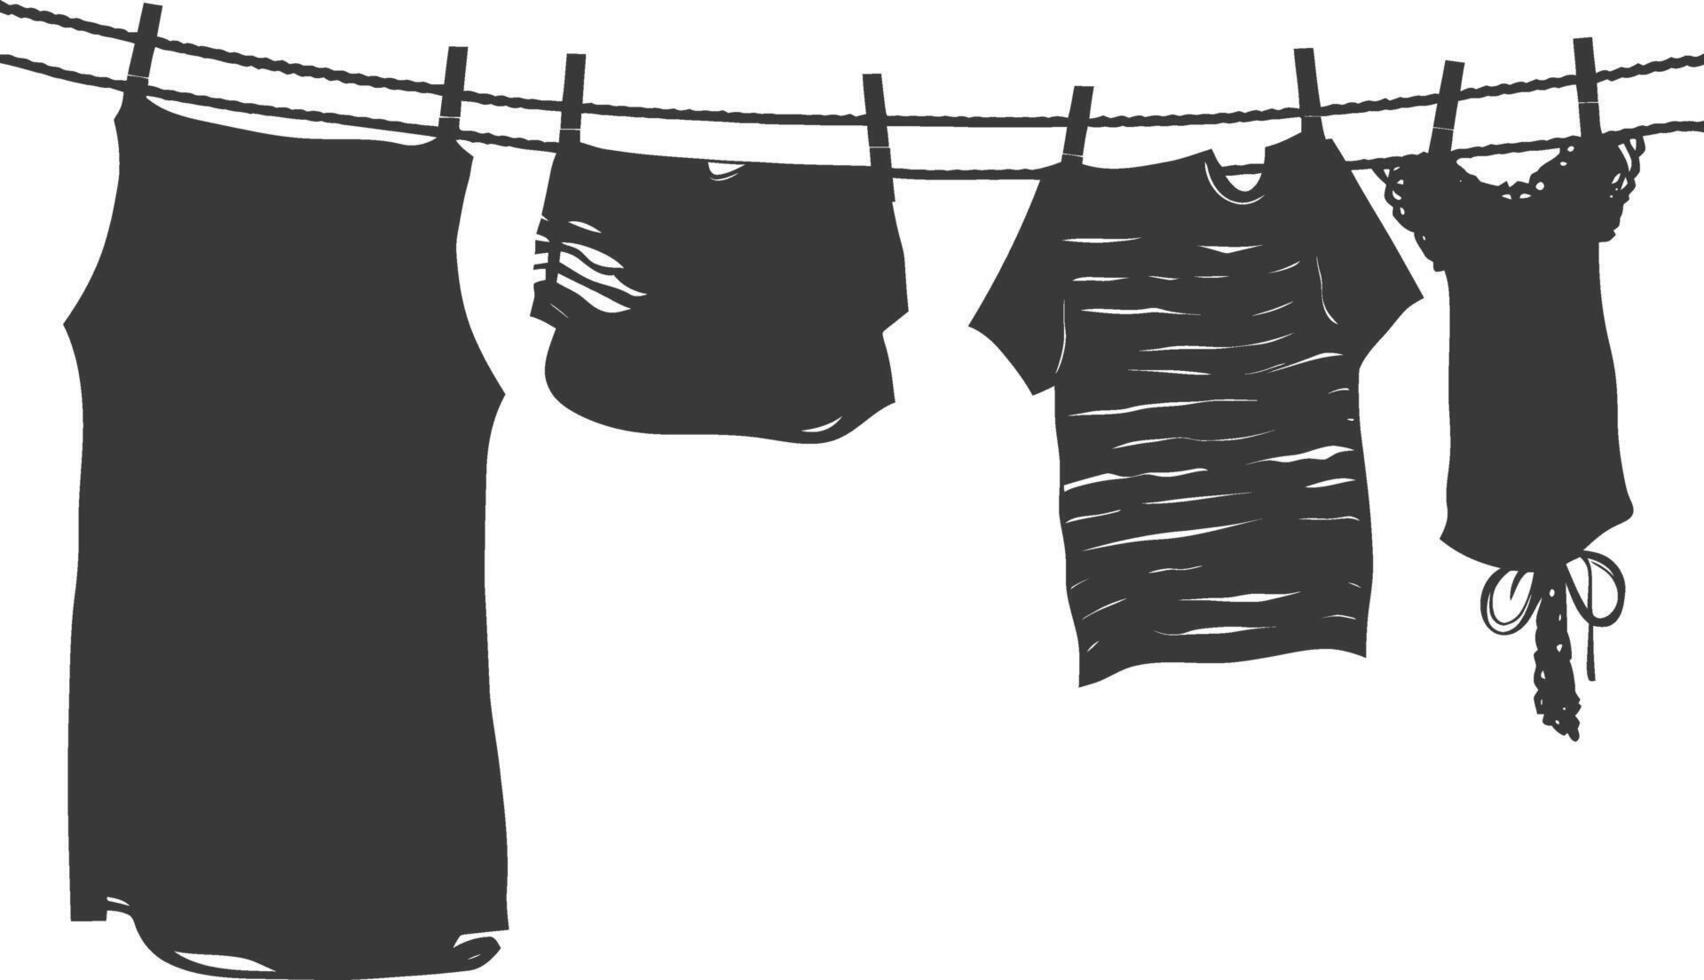 silueta tendedero para colgando ropa negro color solamente vector